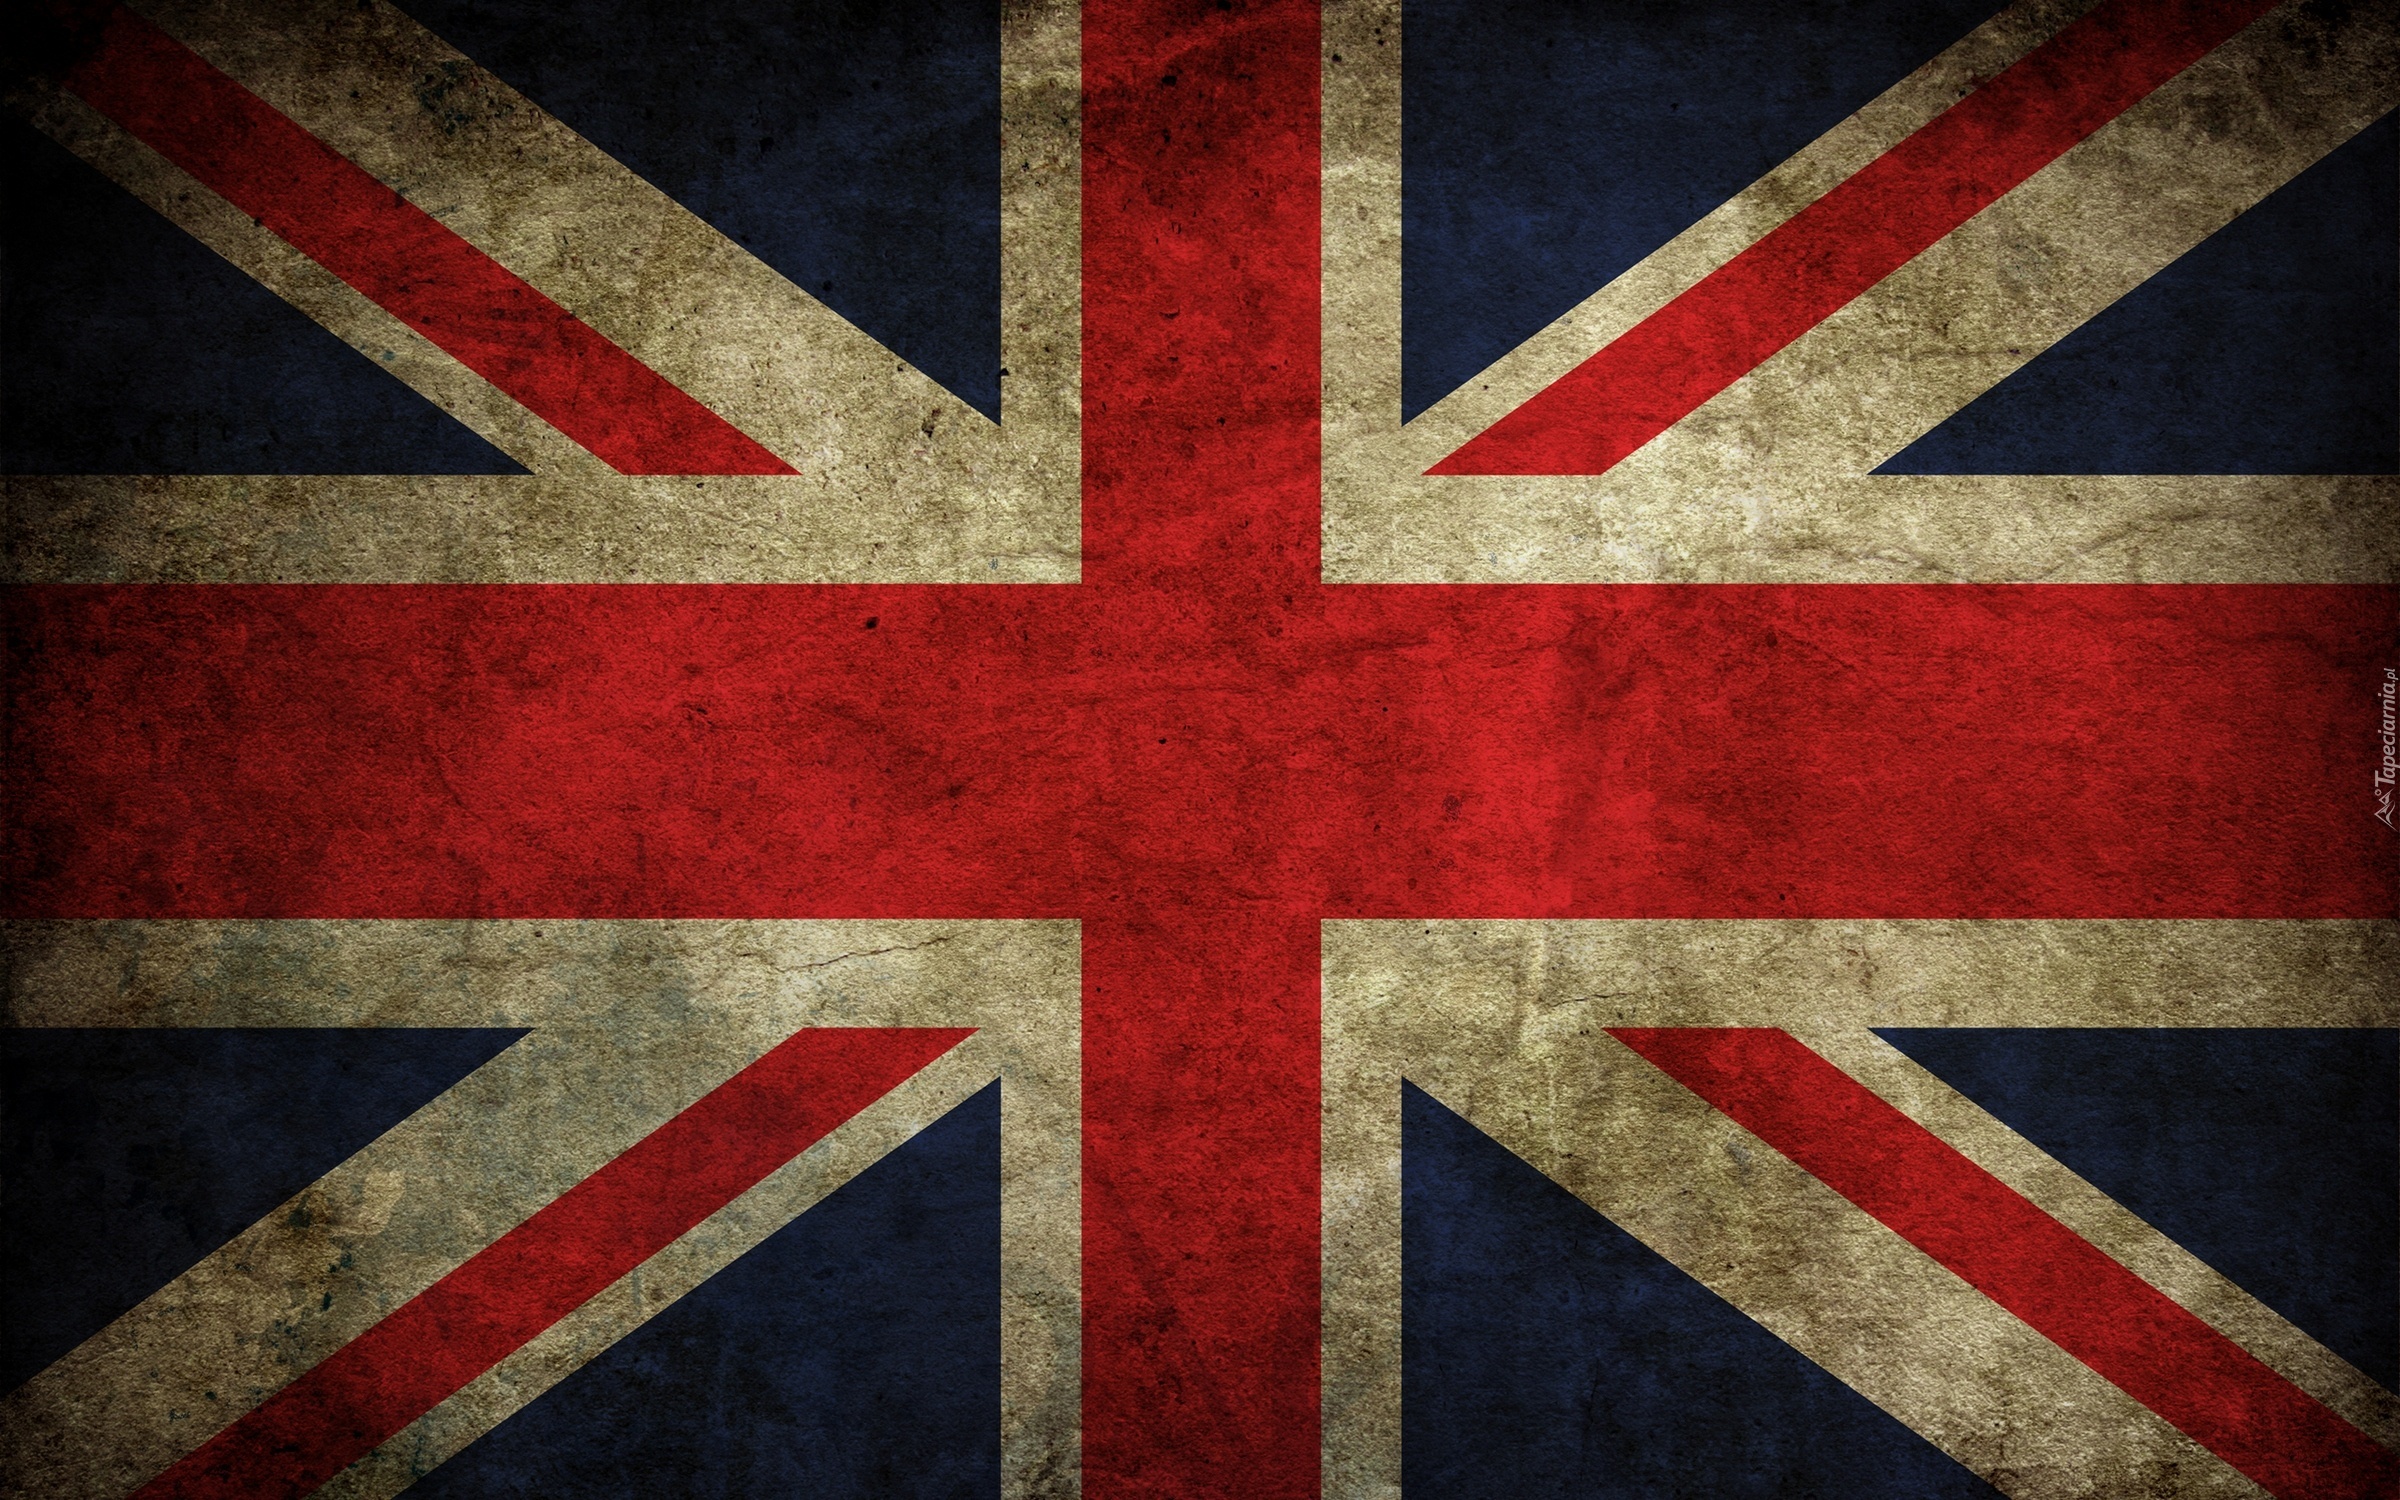 Flaga, Wielkiej, Brytanii